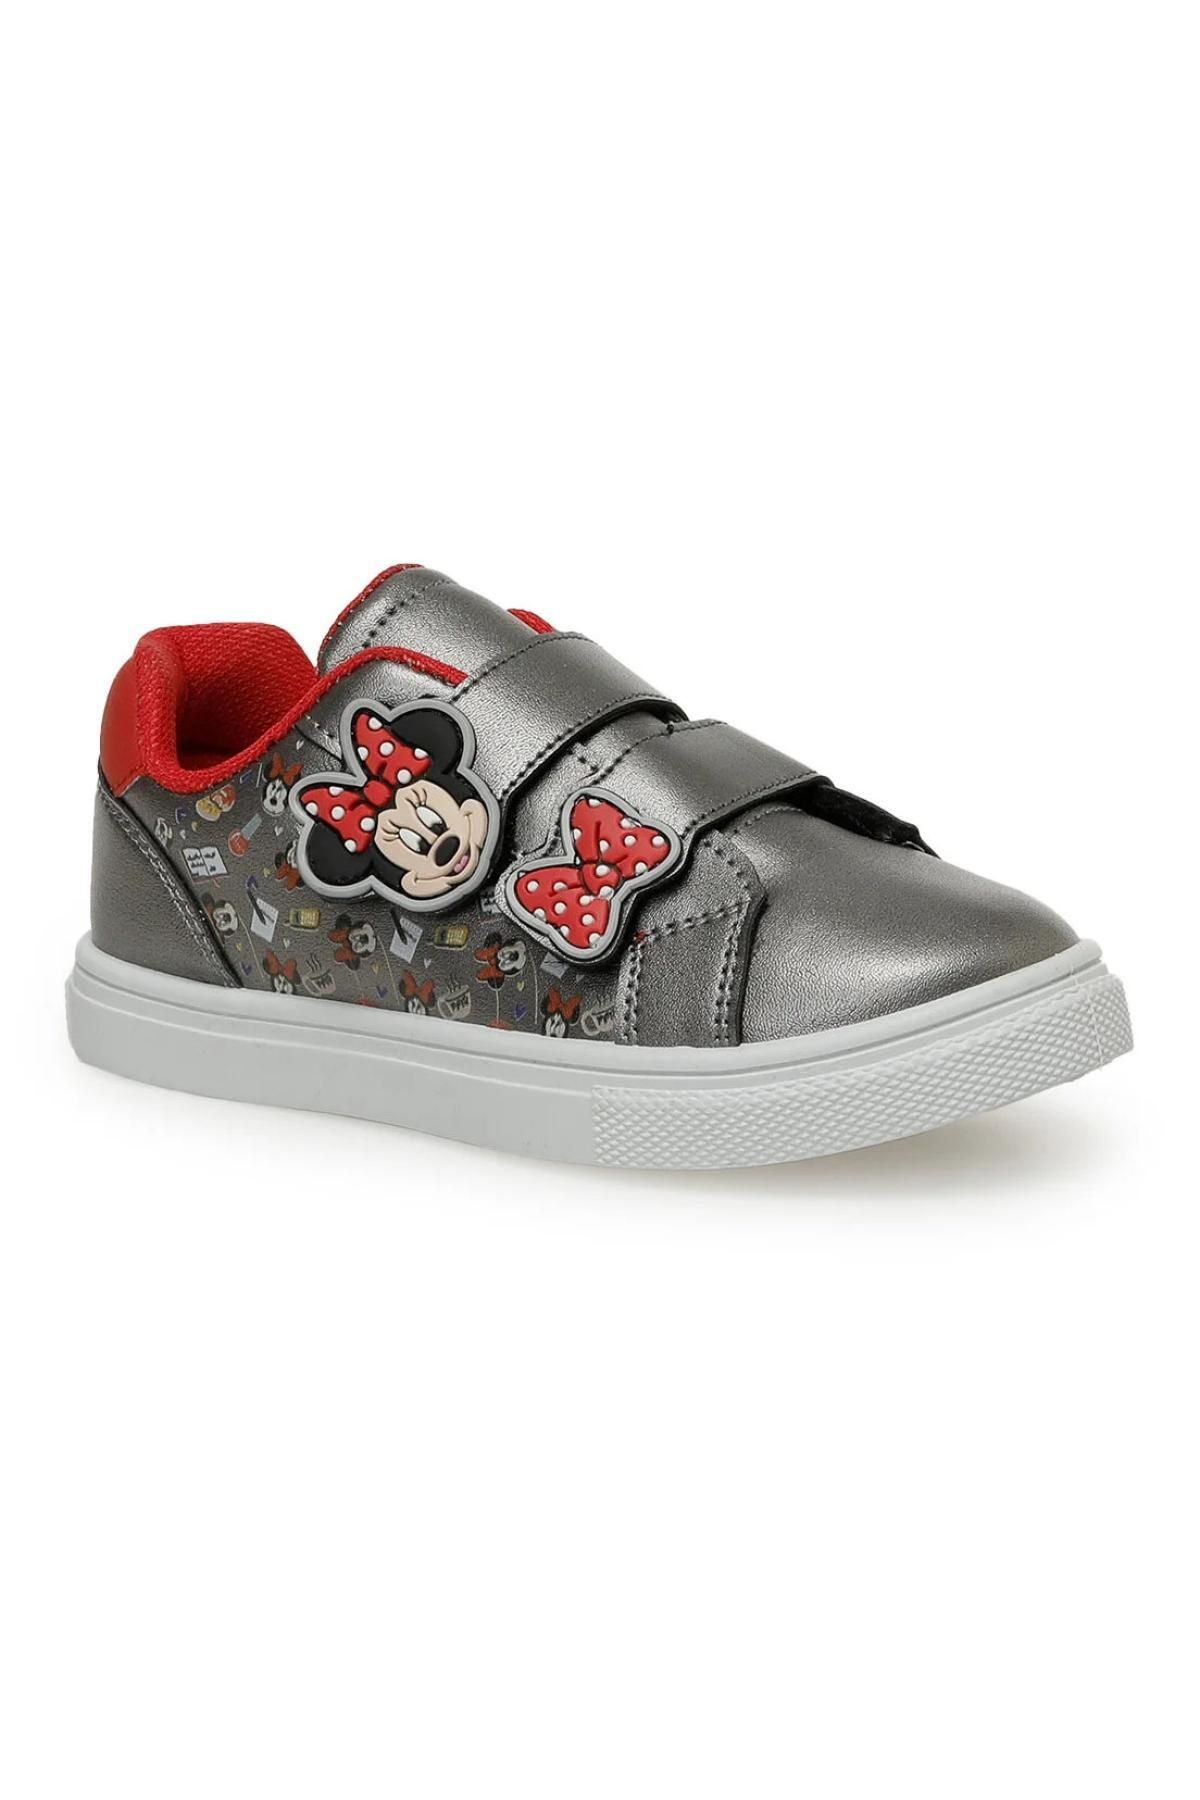 Mickey Mouse Mi?ckey Mouse Bori?nd Günlük Sneakers Antrasi?t Kız Çocuk Spor Ayakkabı